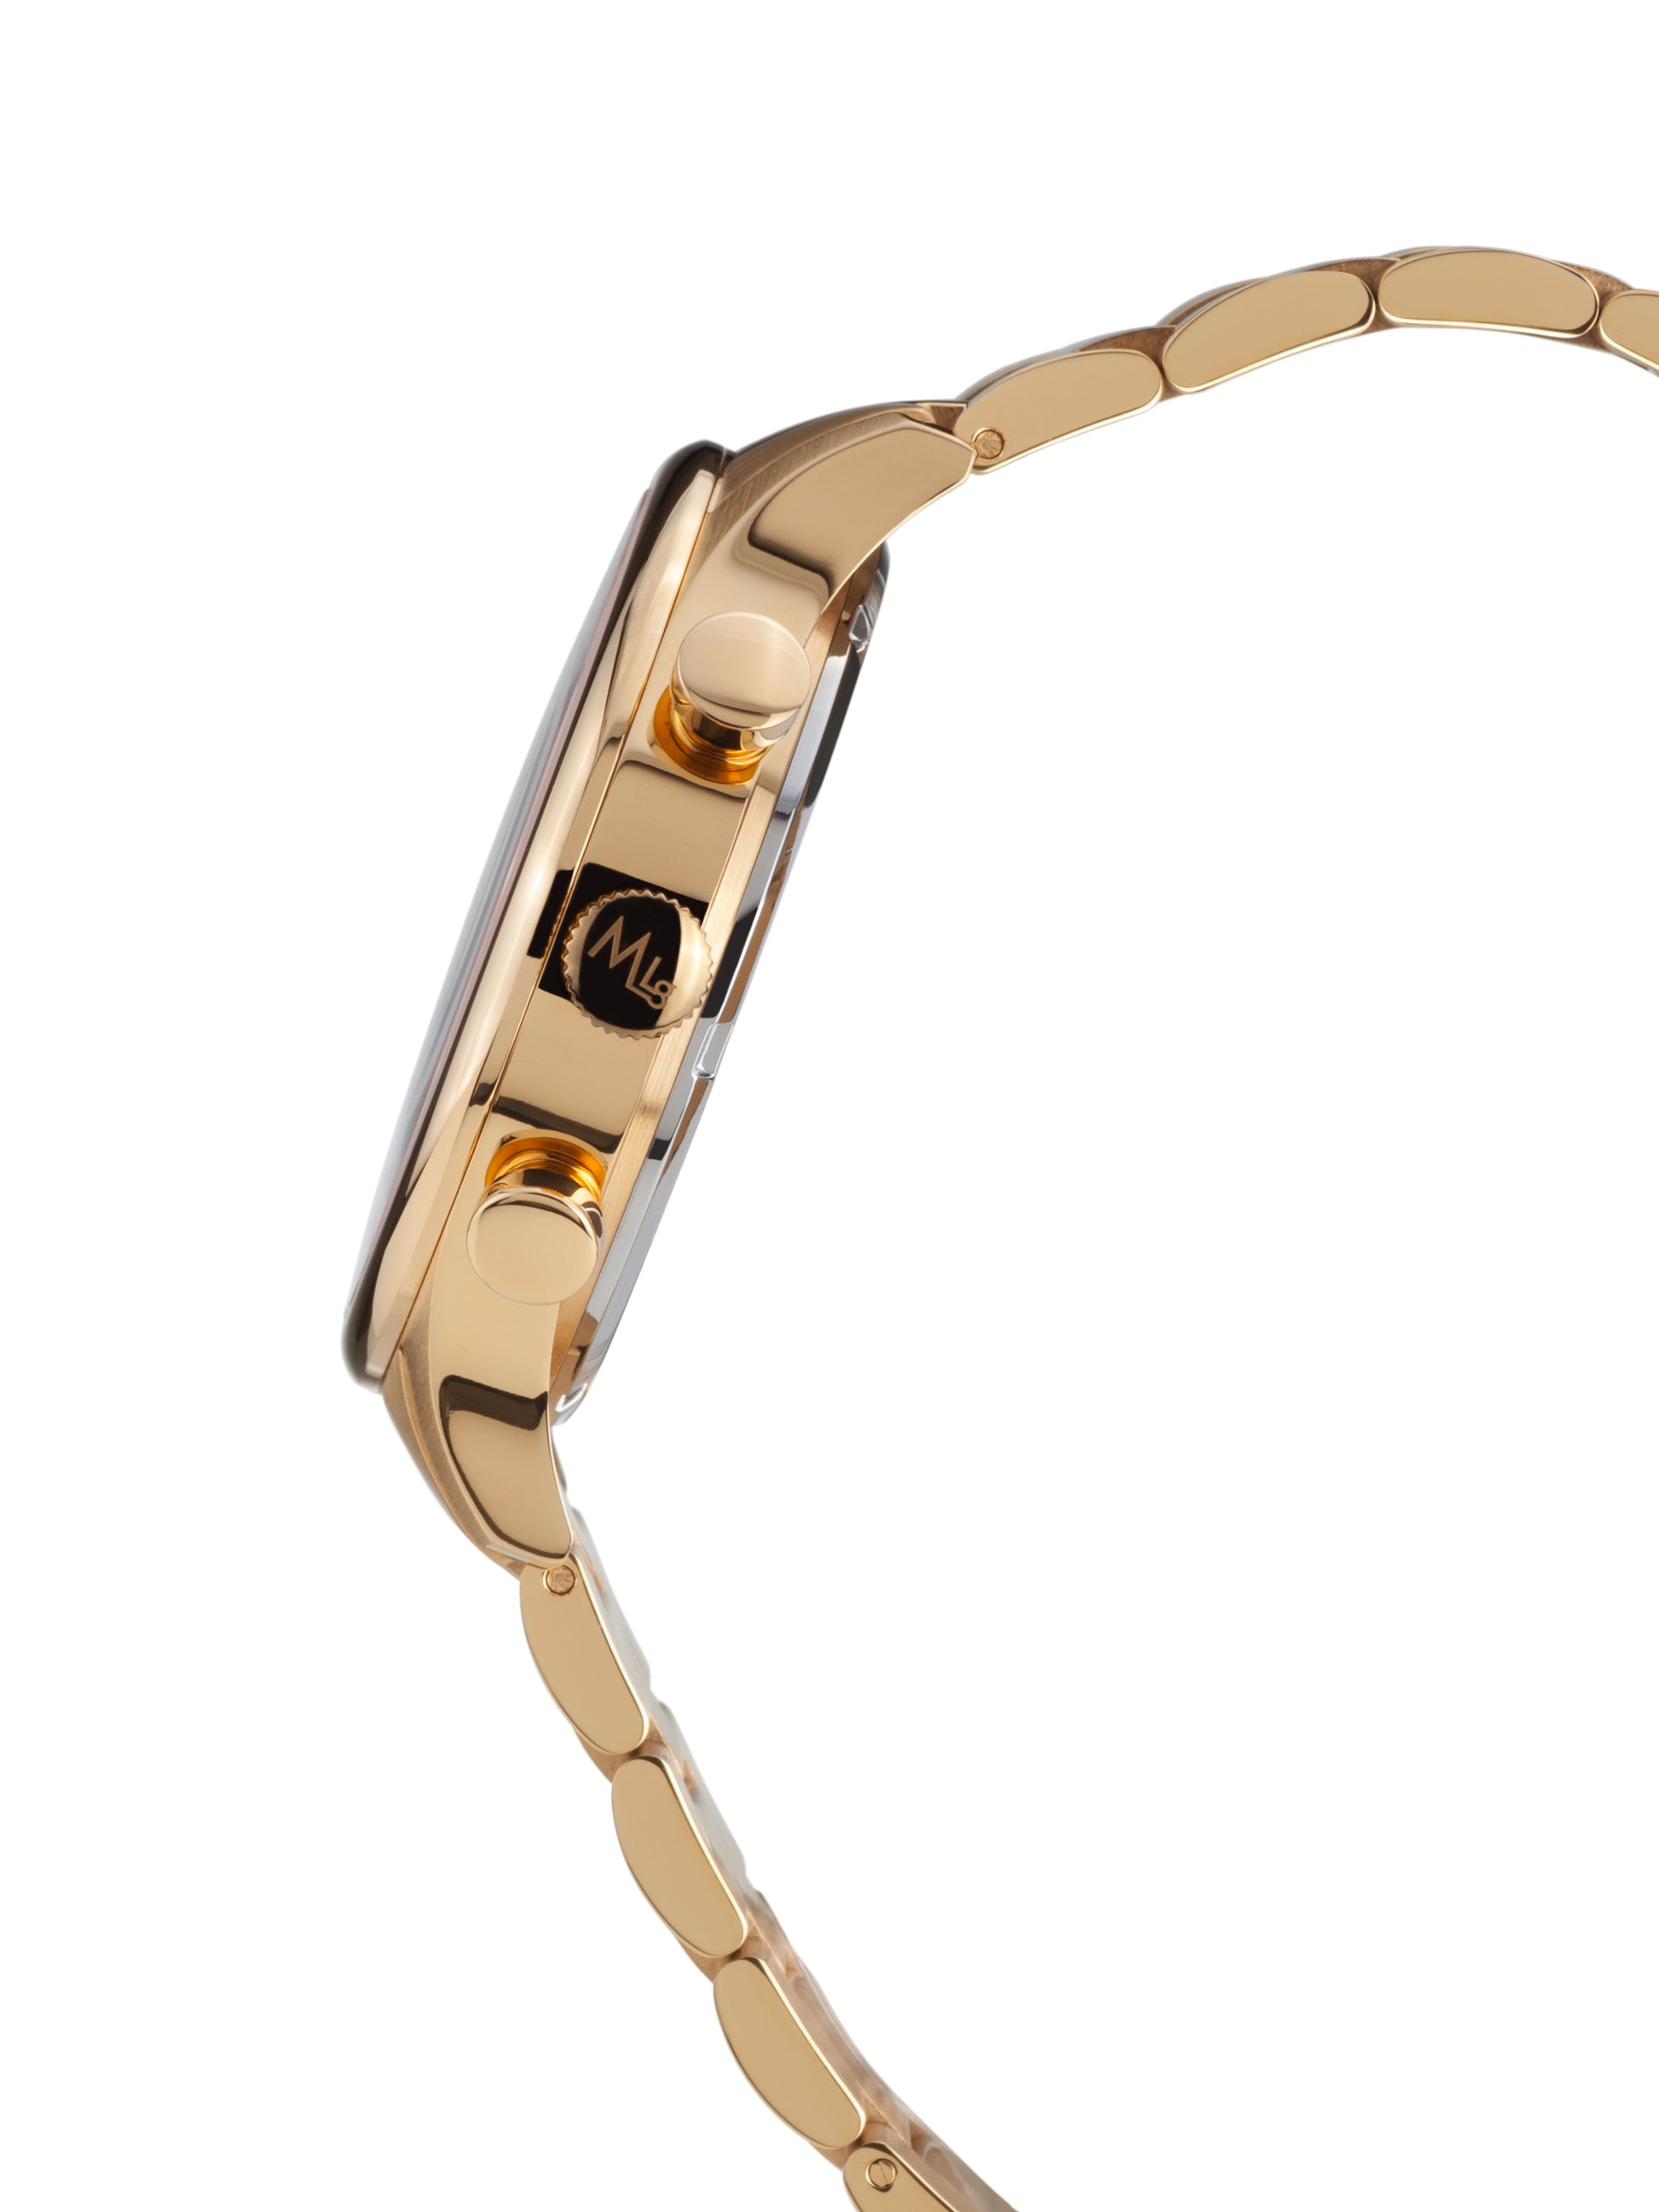 Automatic watches — Métropolitain — Mathieu Legrand — gold IP black